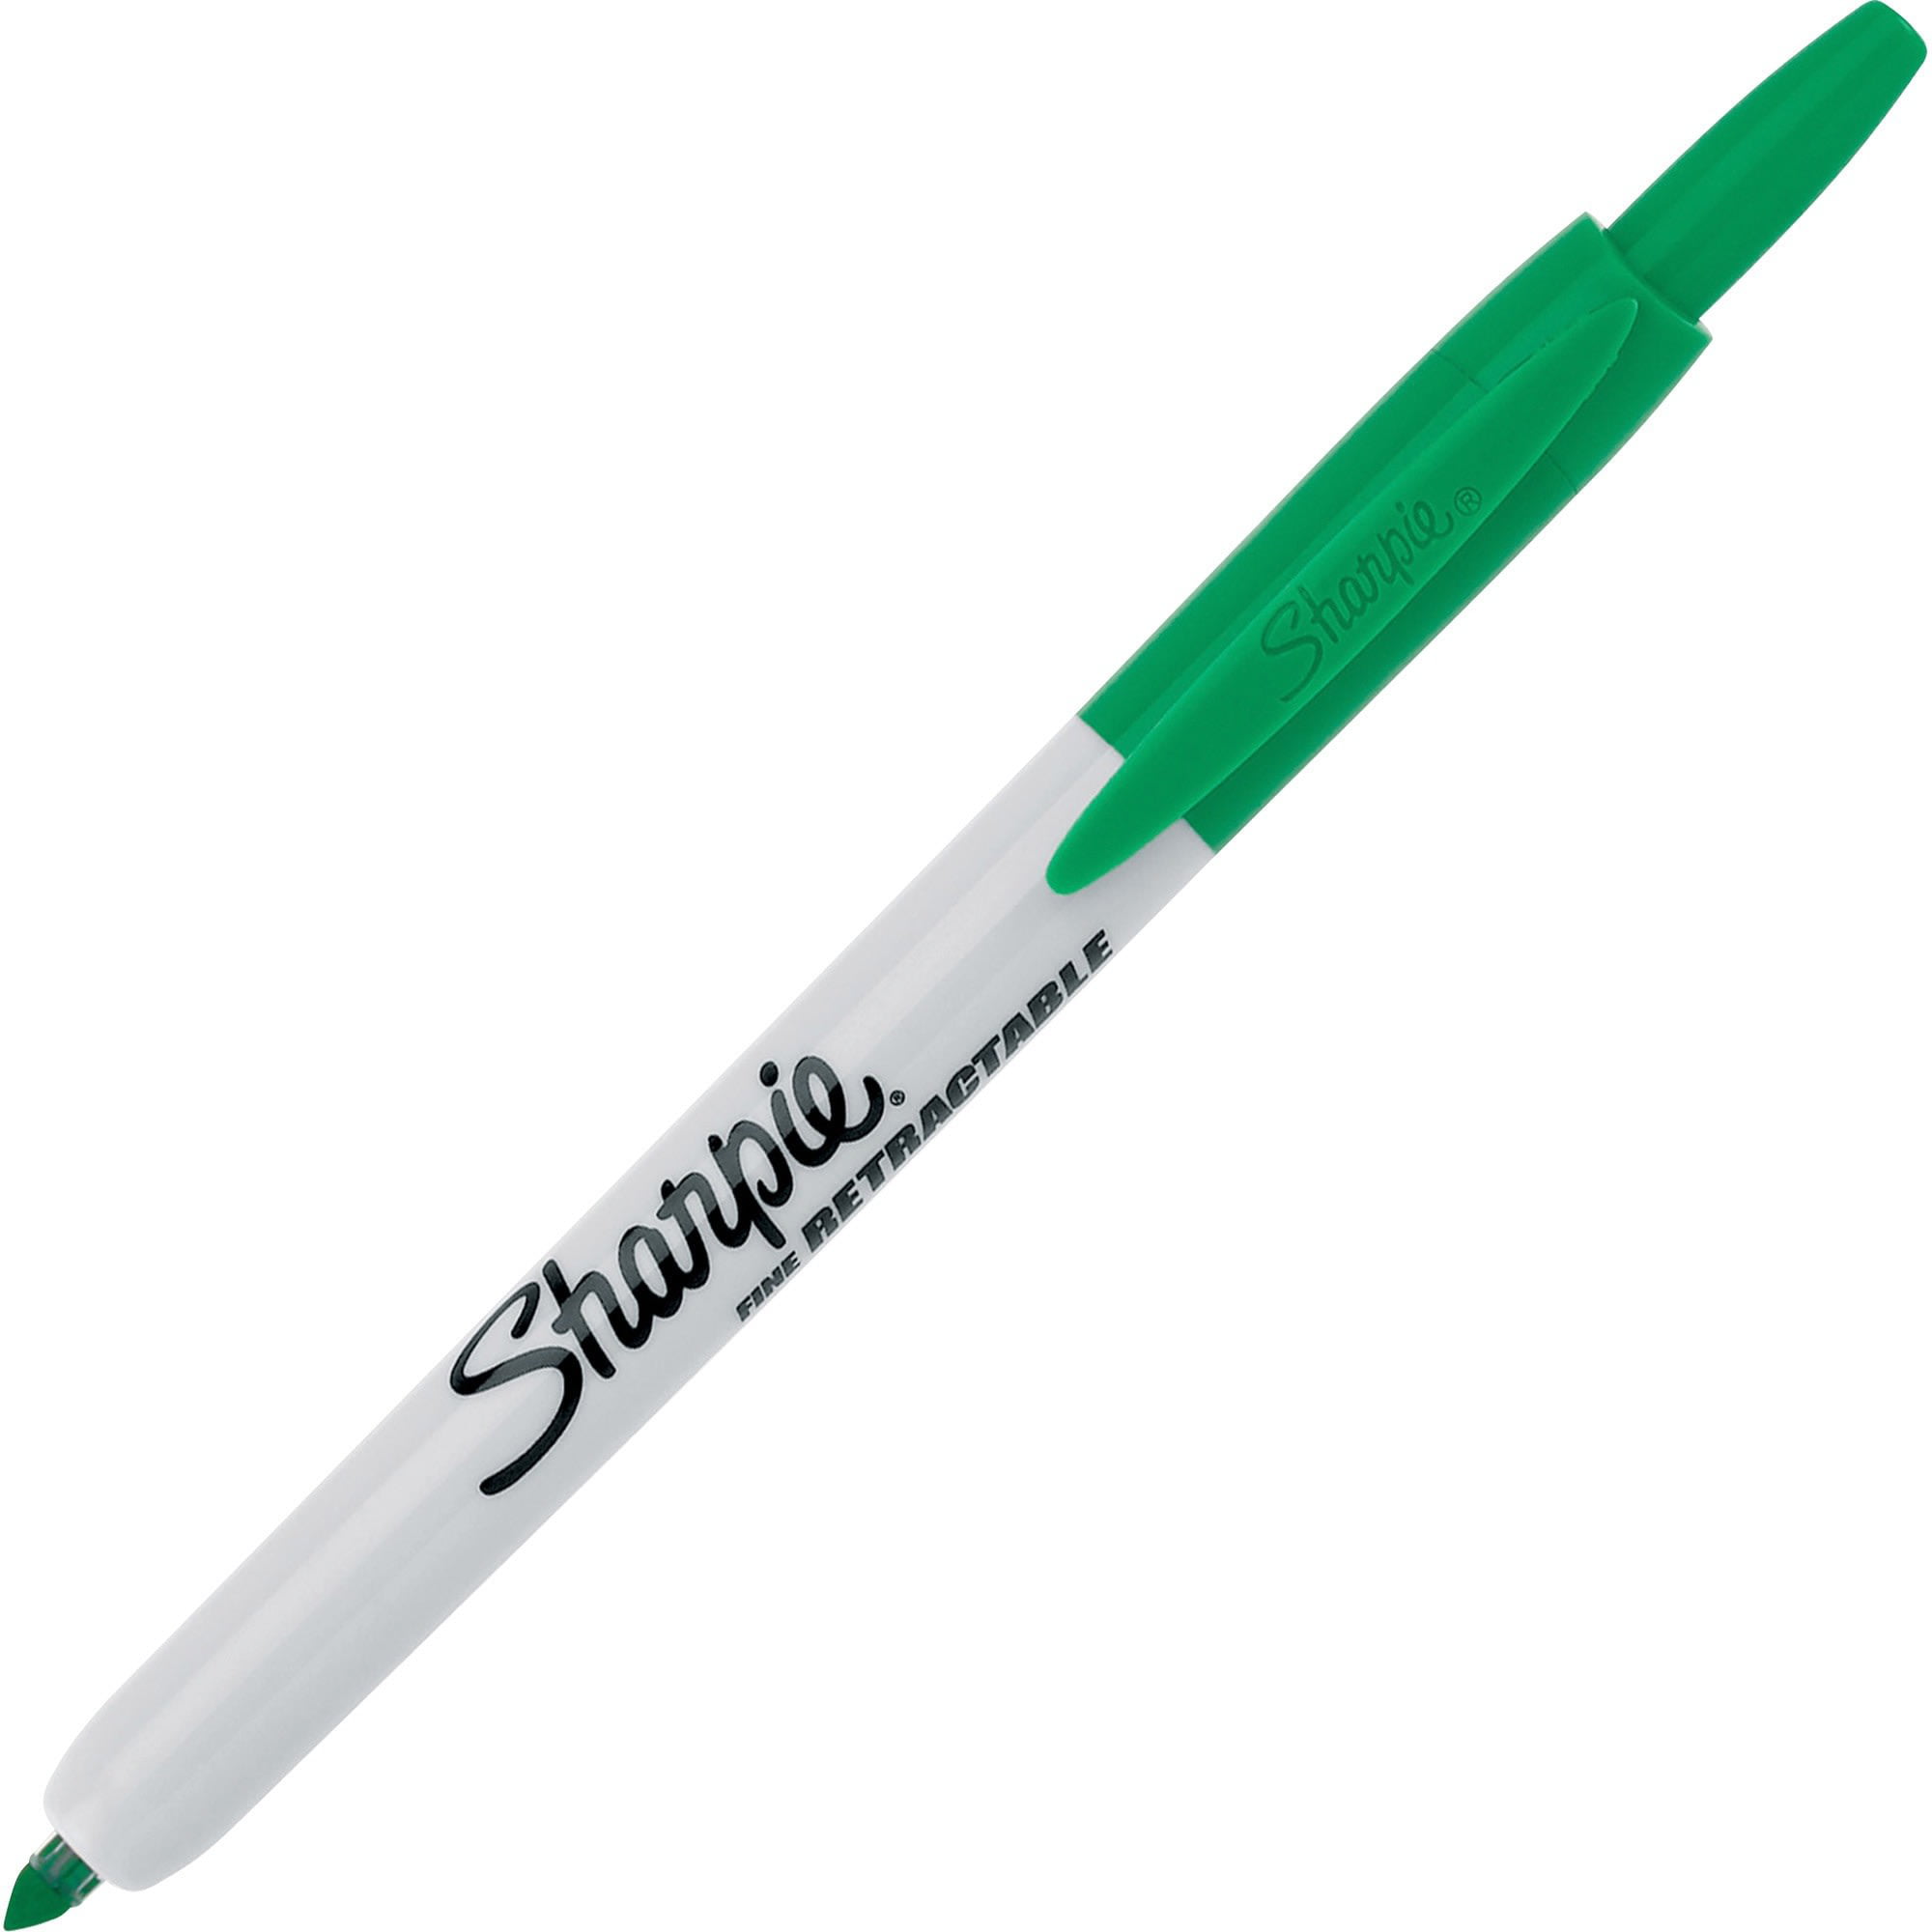  Sharpie Fine Point Green Pen : Computer Internal